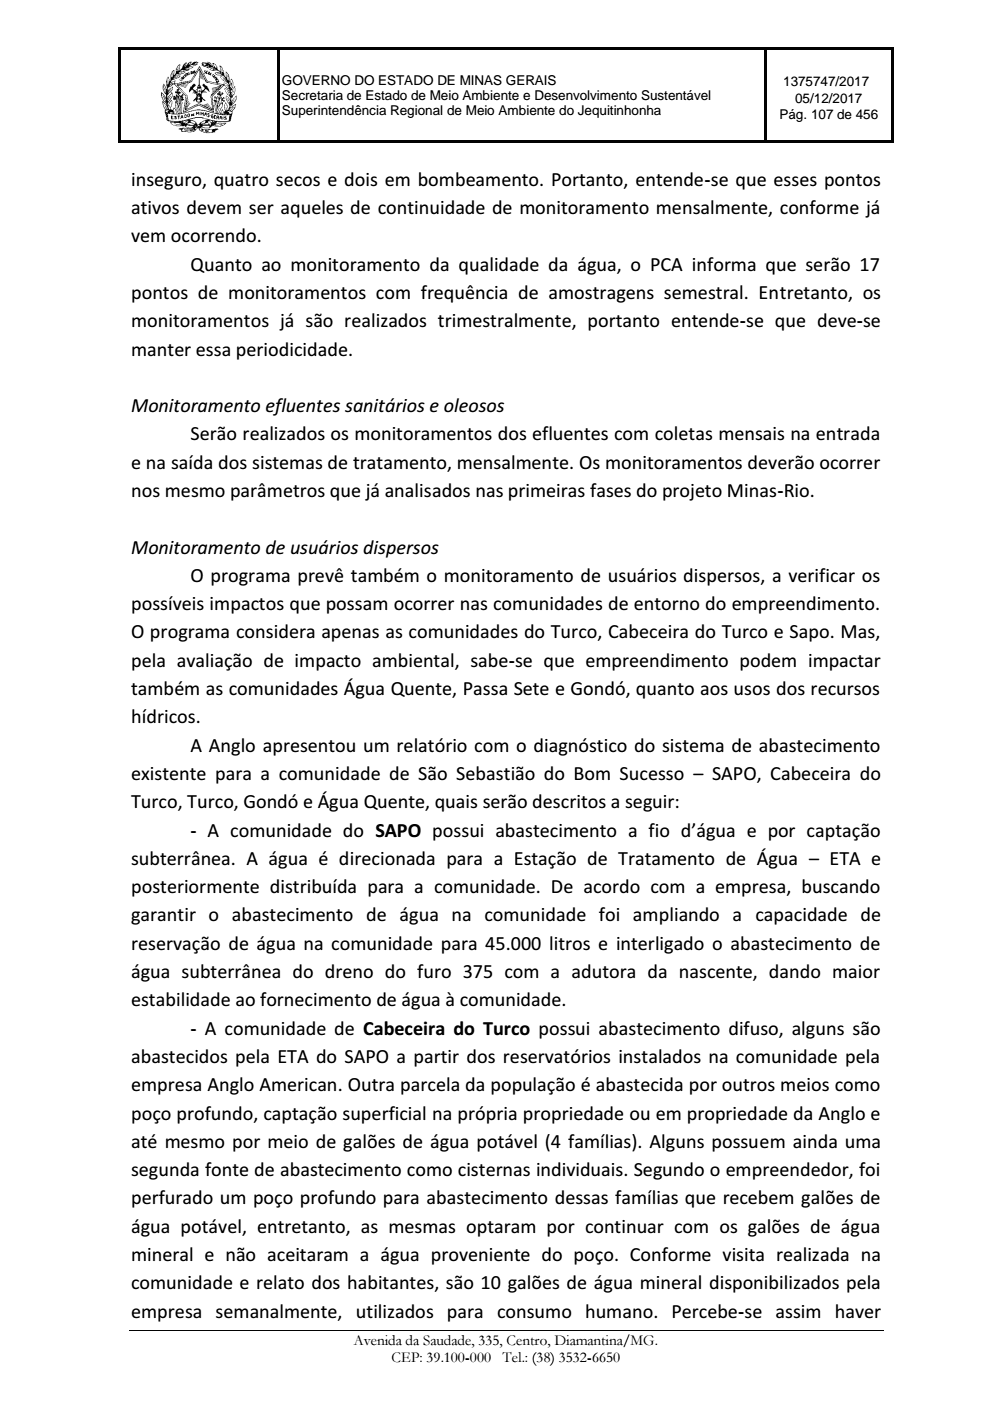 Page 107 from Parecer único da Secretaria de estado de Meio Ambiente e Desenvolvimento Sustentável (SEMAD)